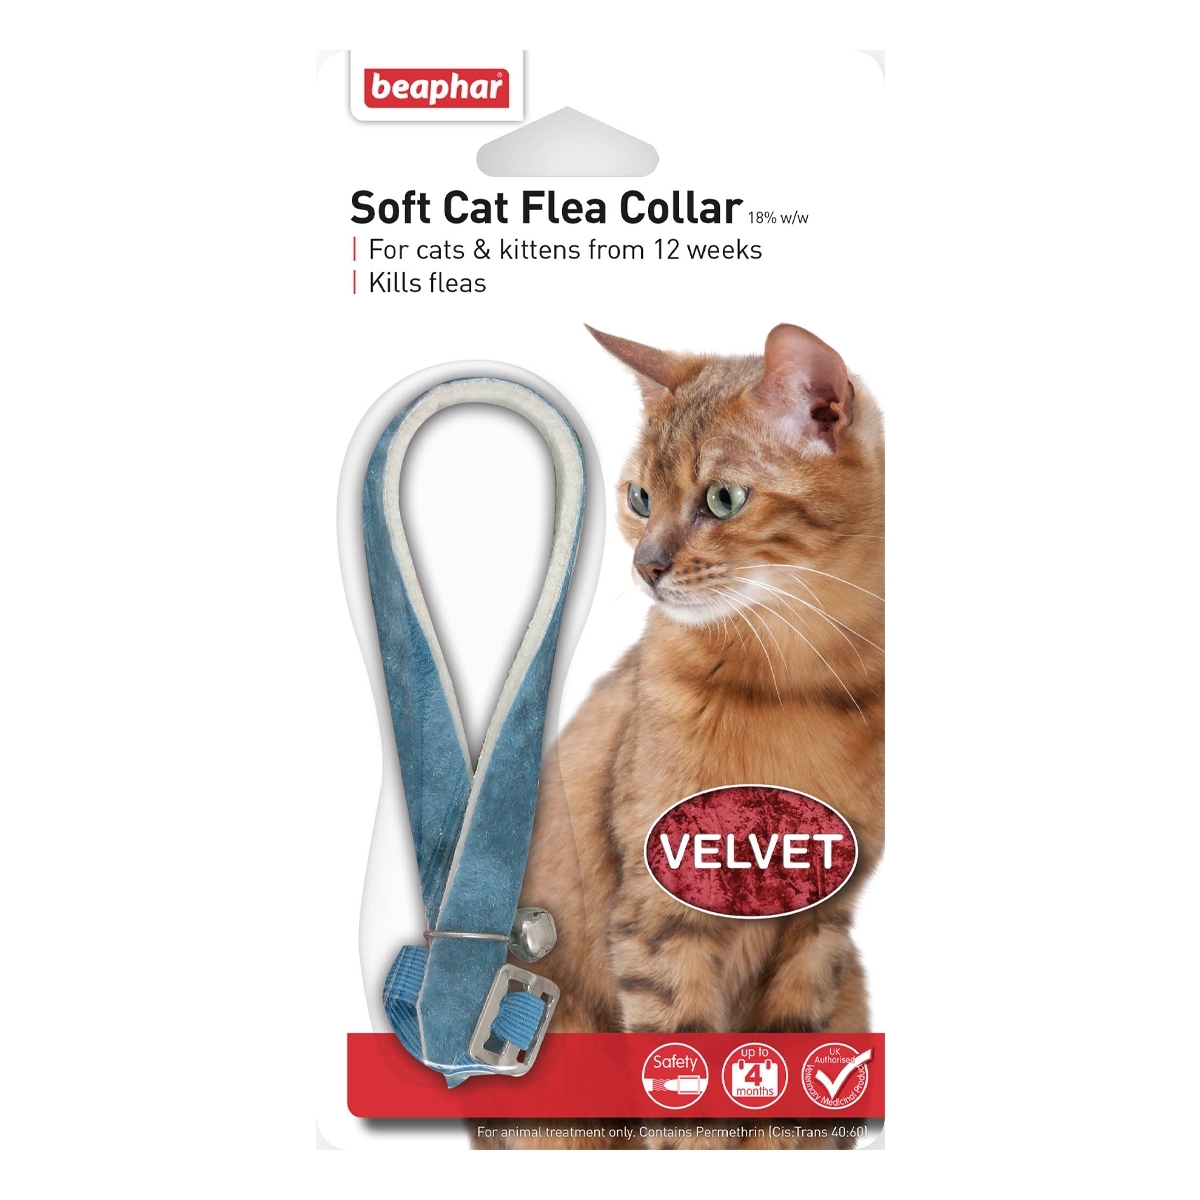 Beaphar Soft Flea Collar Velvet 16 Weeks Protection For Cats & Kitten